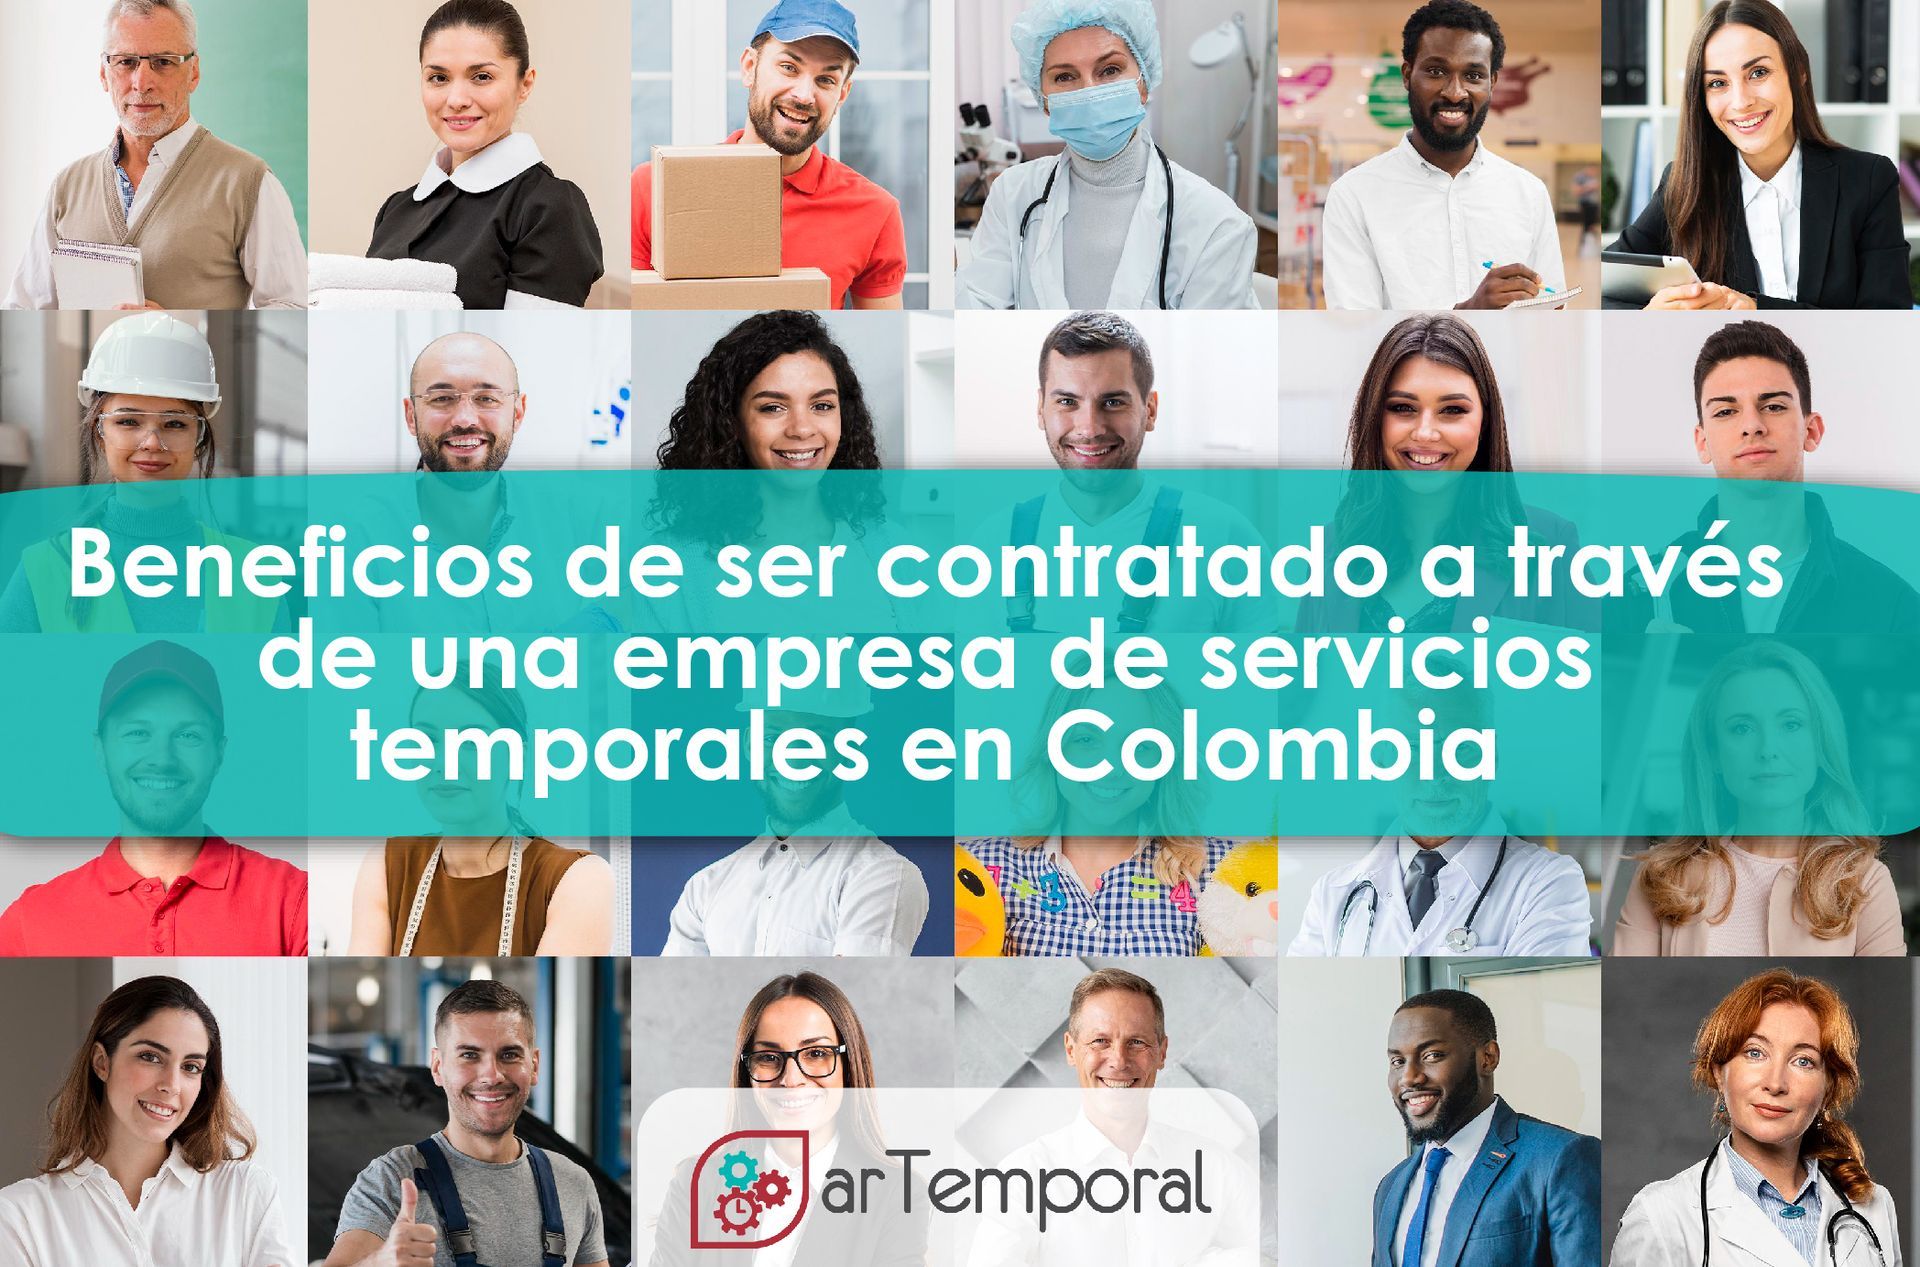 Beneficios Laborales y Contratos Temporales en Colombia | Artemporal